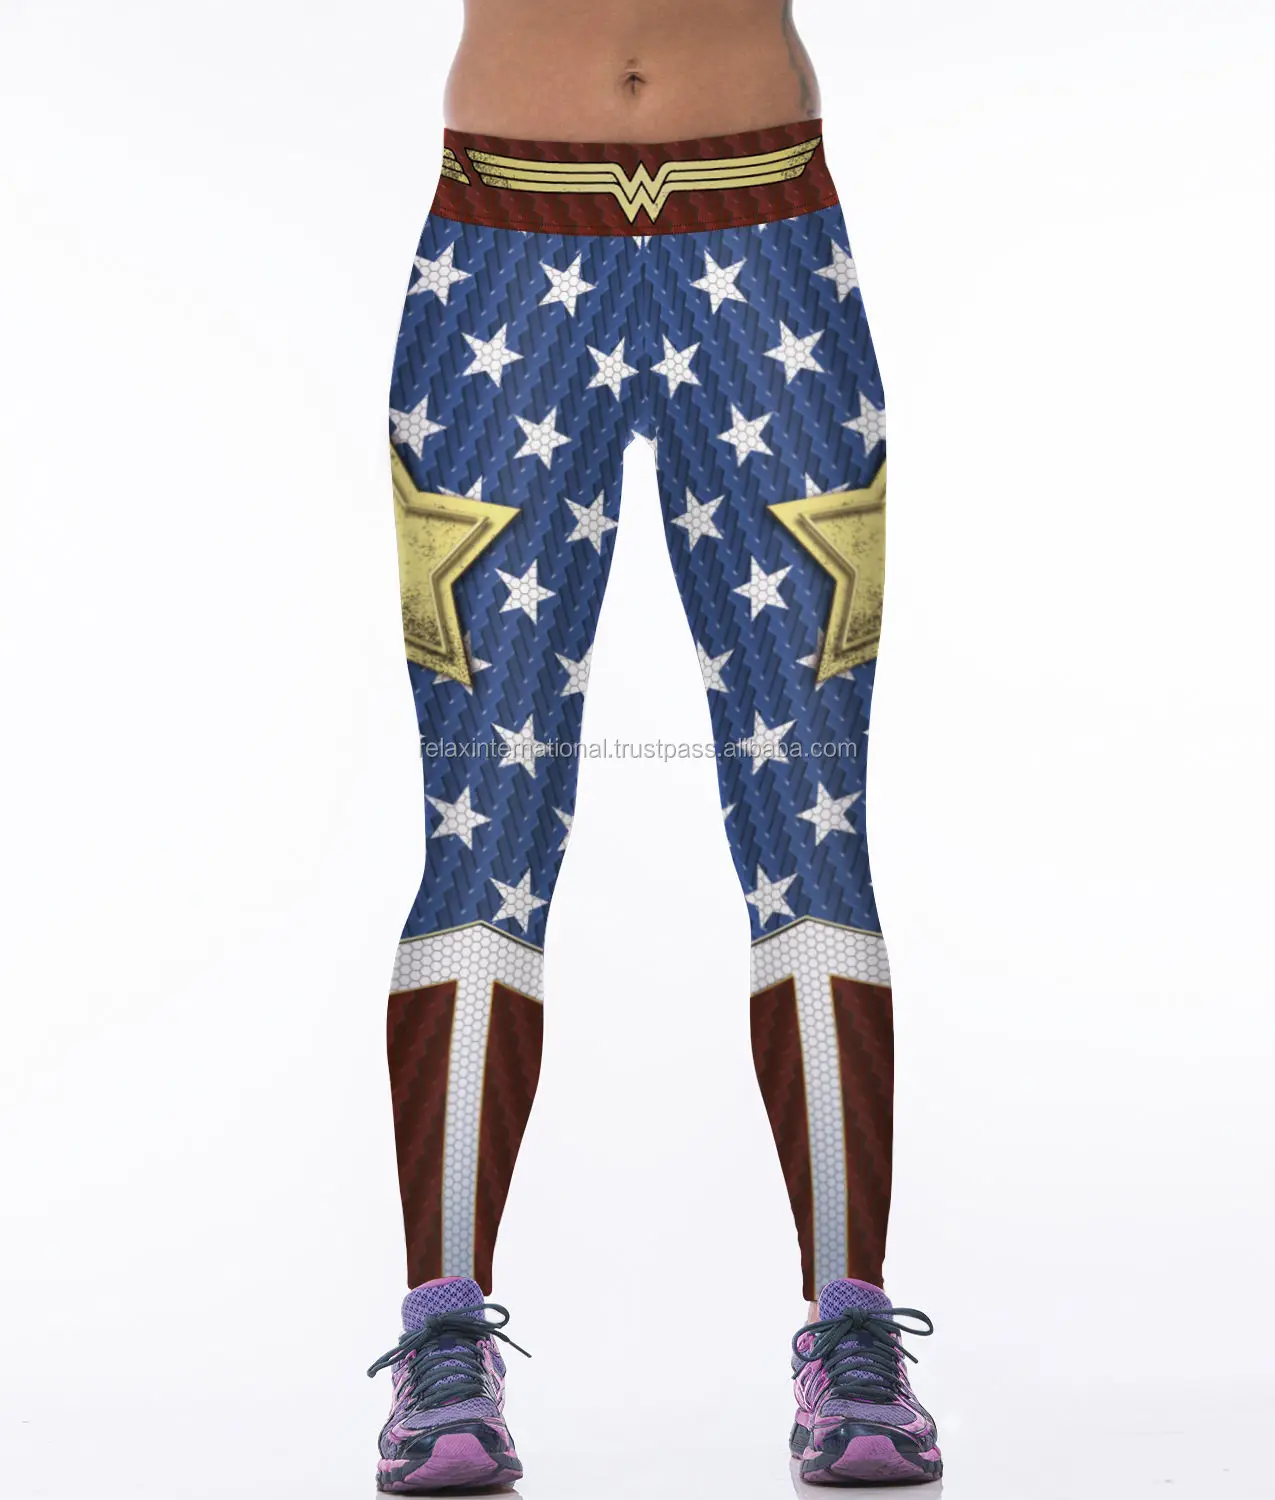 Source Wonder Woman-mallas deportivas para Leggings ajustados con diseño de bandera de EE. UU. on m.alibaba.com